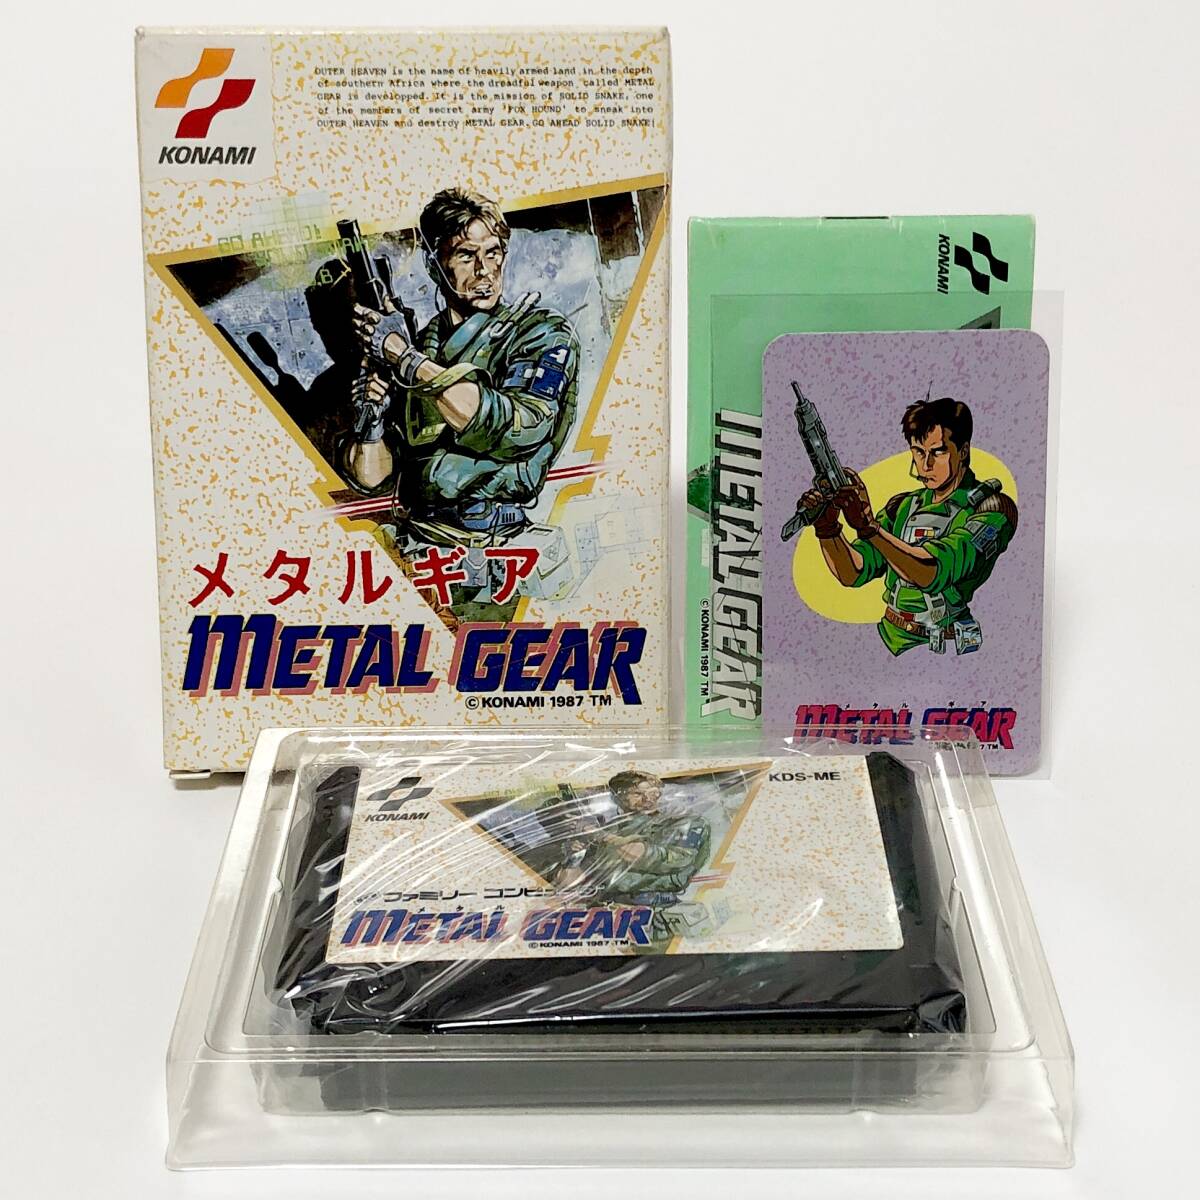 ファミコン メタルギア 箱説付き キャラカード付き 痛みあり 動作確認済み コナミ Nintendo Famicom Metal Gear CIB Tested Konamiの画像1